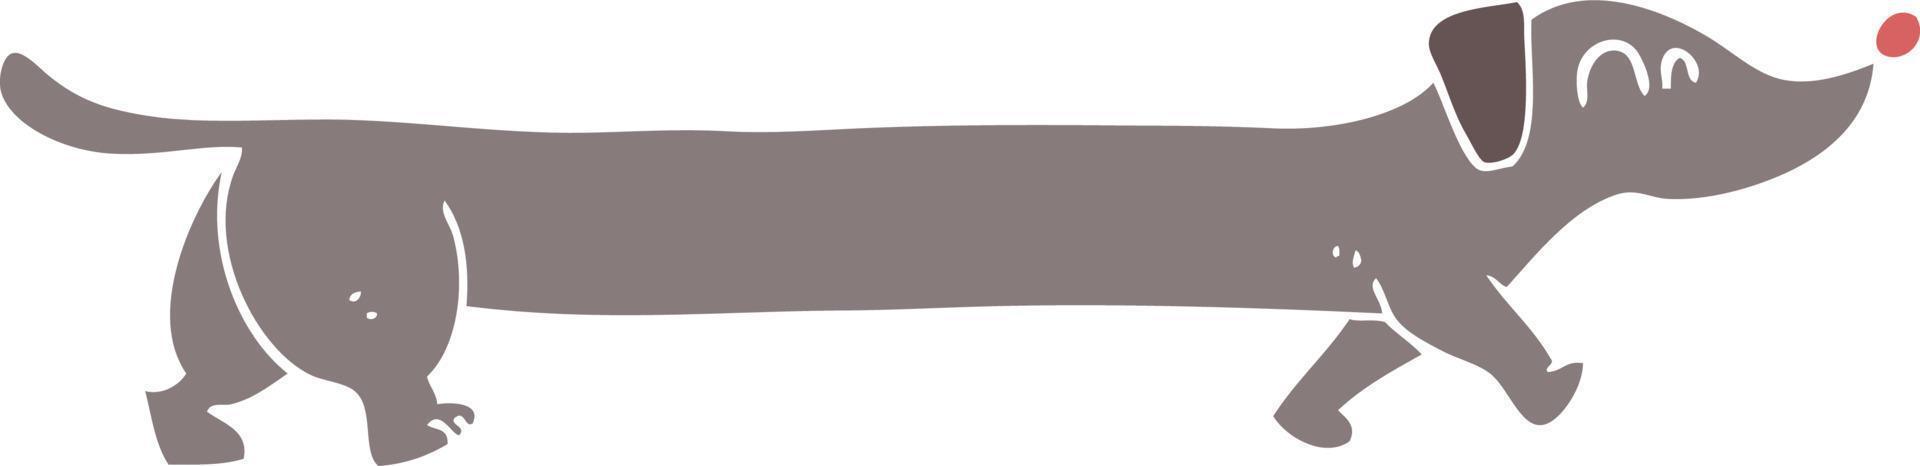 ilustração de cor lisa do dachshund vetor